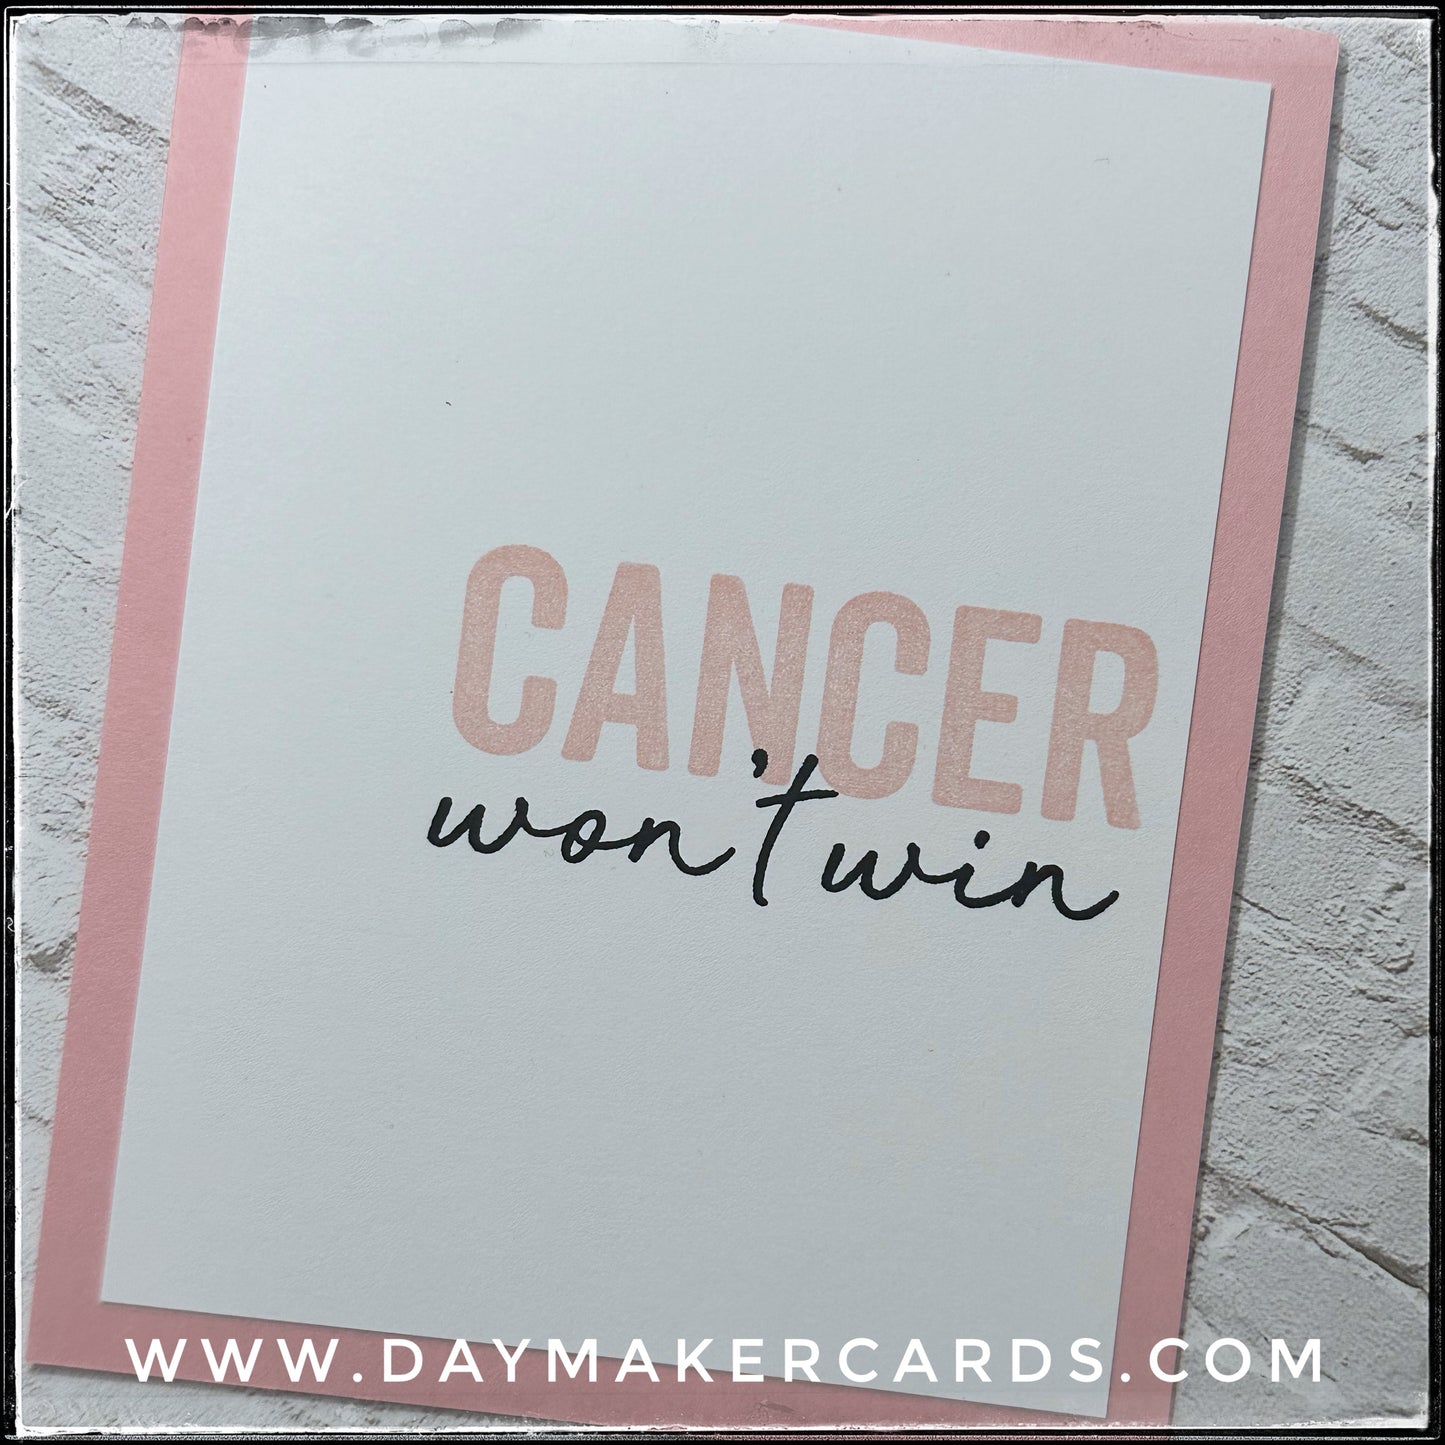 Cancer Won't Win Handmade Card